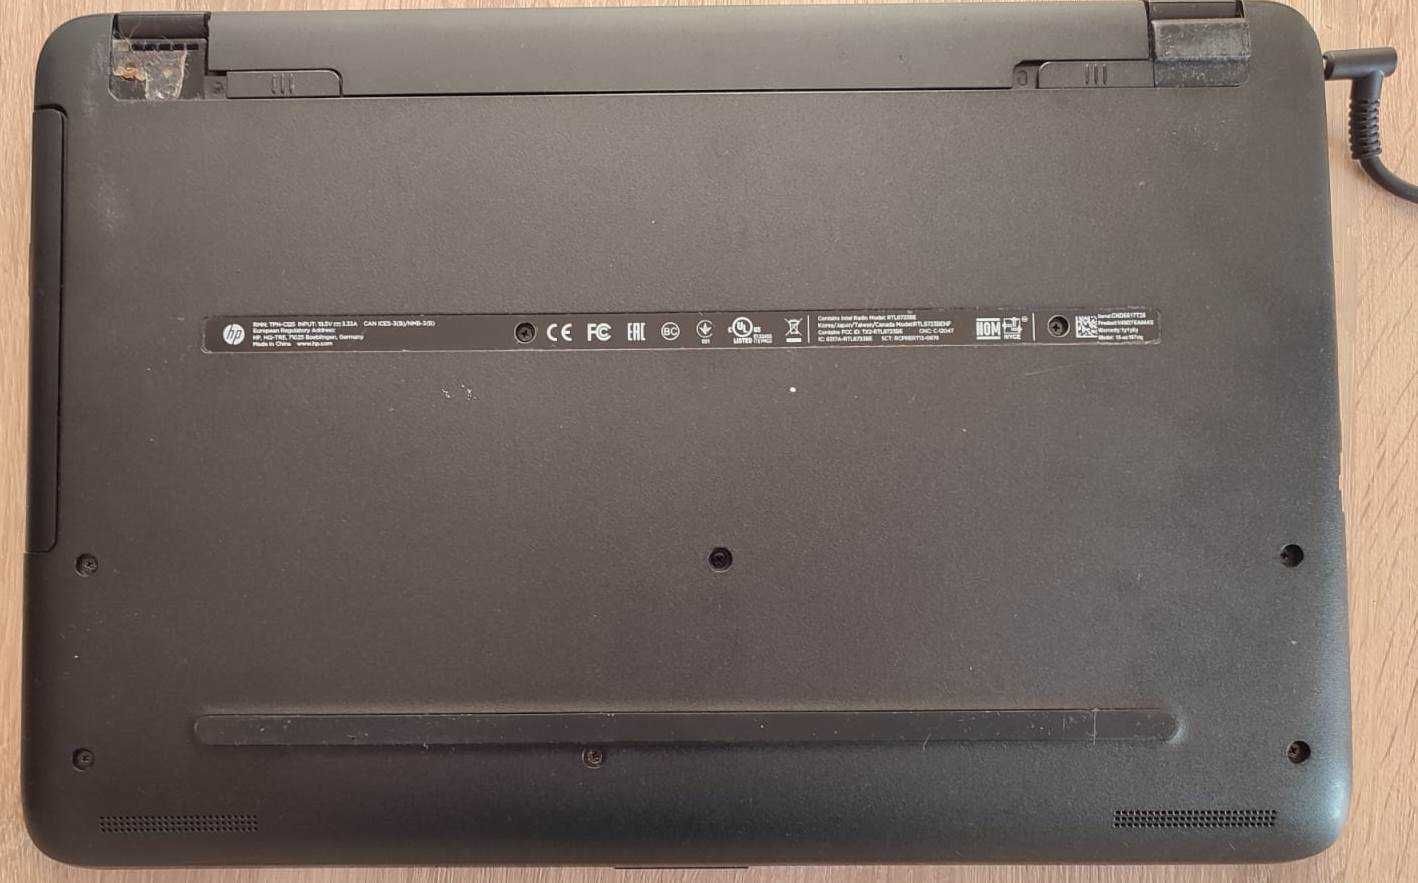 Laptop HP I3 5005U, SSD 128 GB